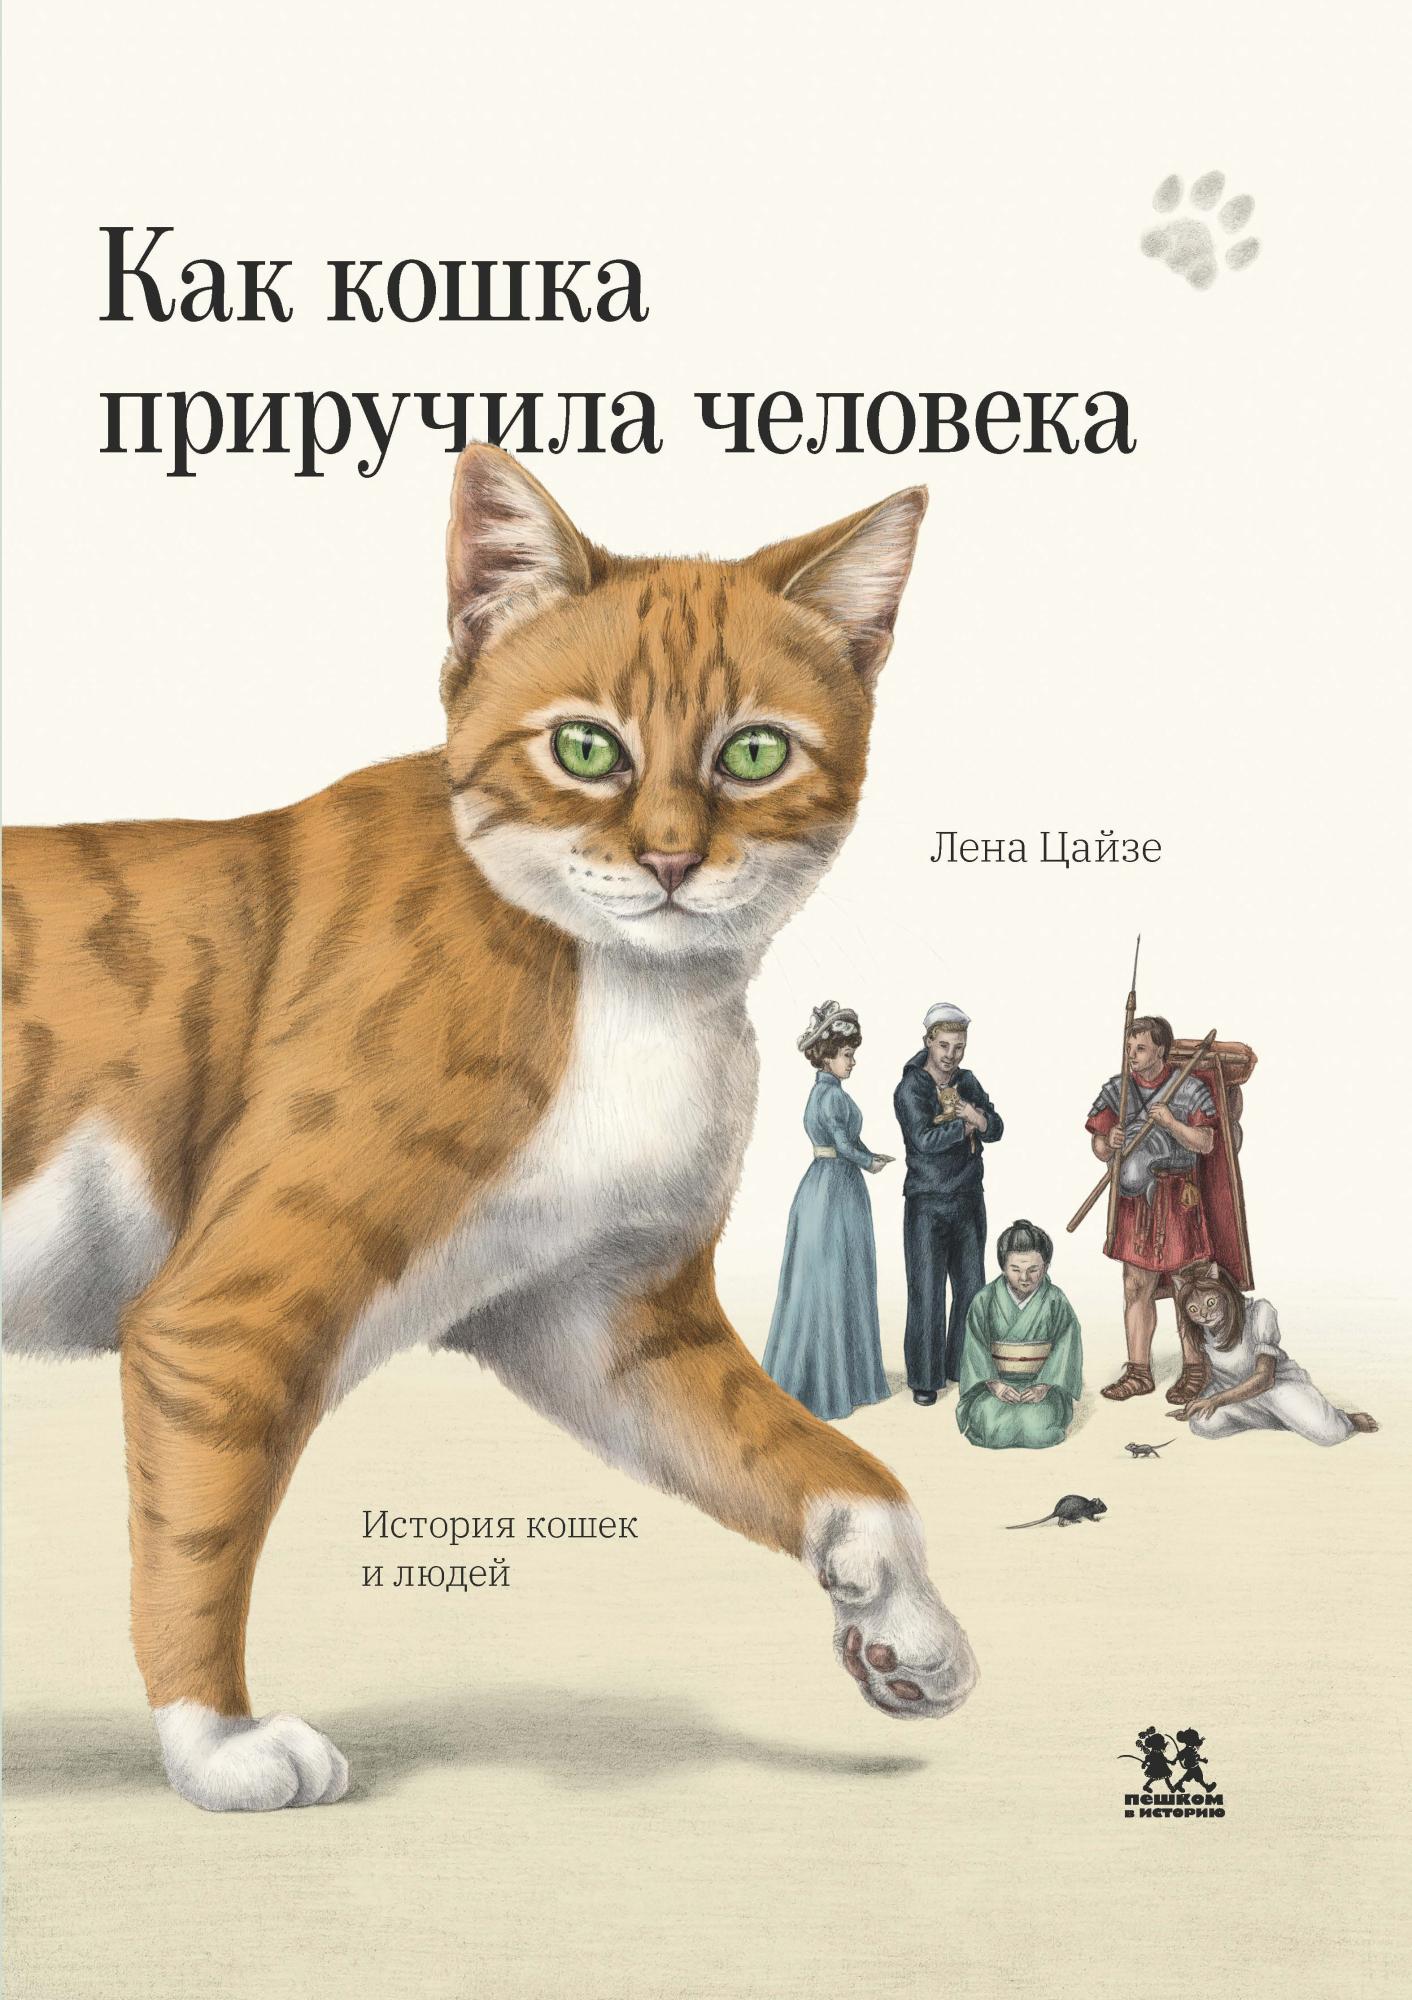 Как кошка приручила человека: история кошек и людей - купить книгу в  издательстве Пешком в историю ISBN 978-5-907471-86-3